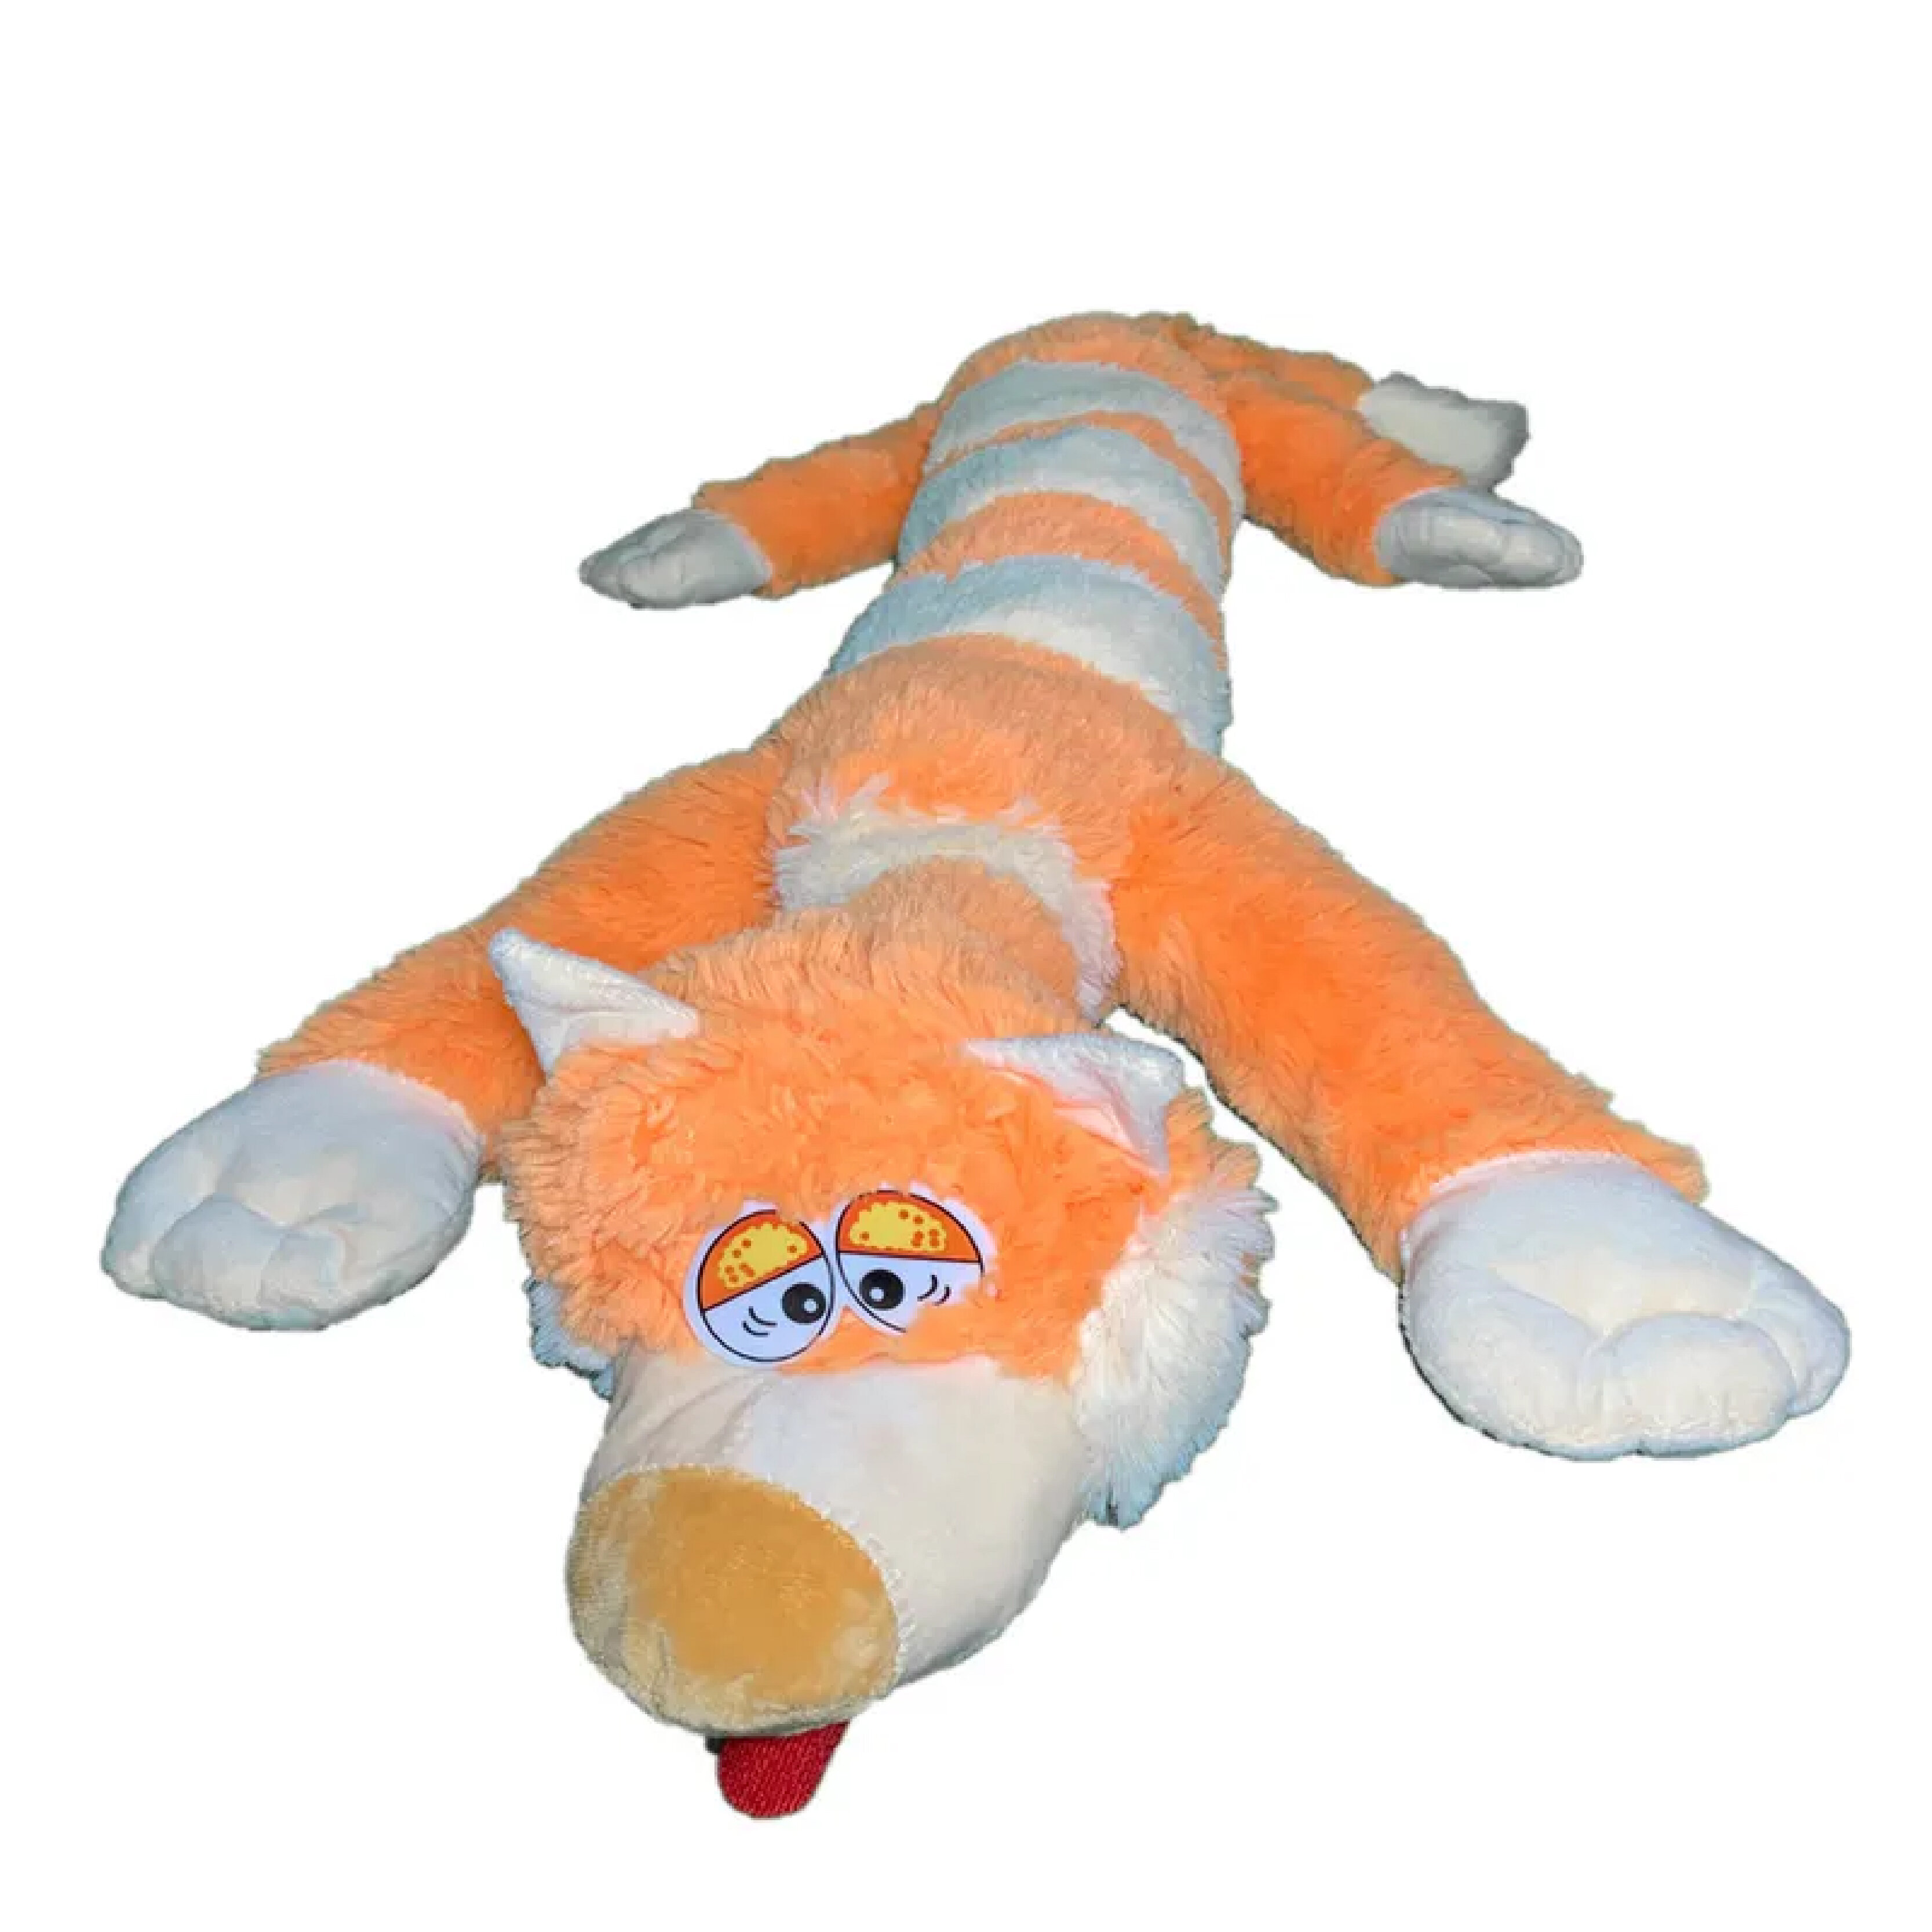 Мягкая игрушка Sun Toys Кот багет оранжевый 90 см мягкая игрушка toy and joy кот багет 100см оранжевый bel 03356 orange